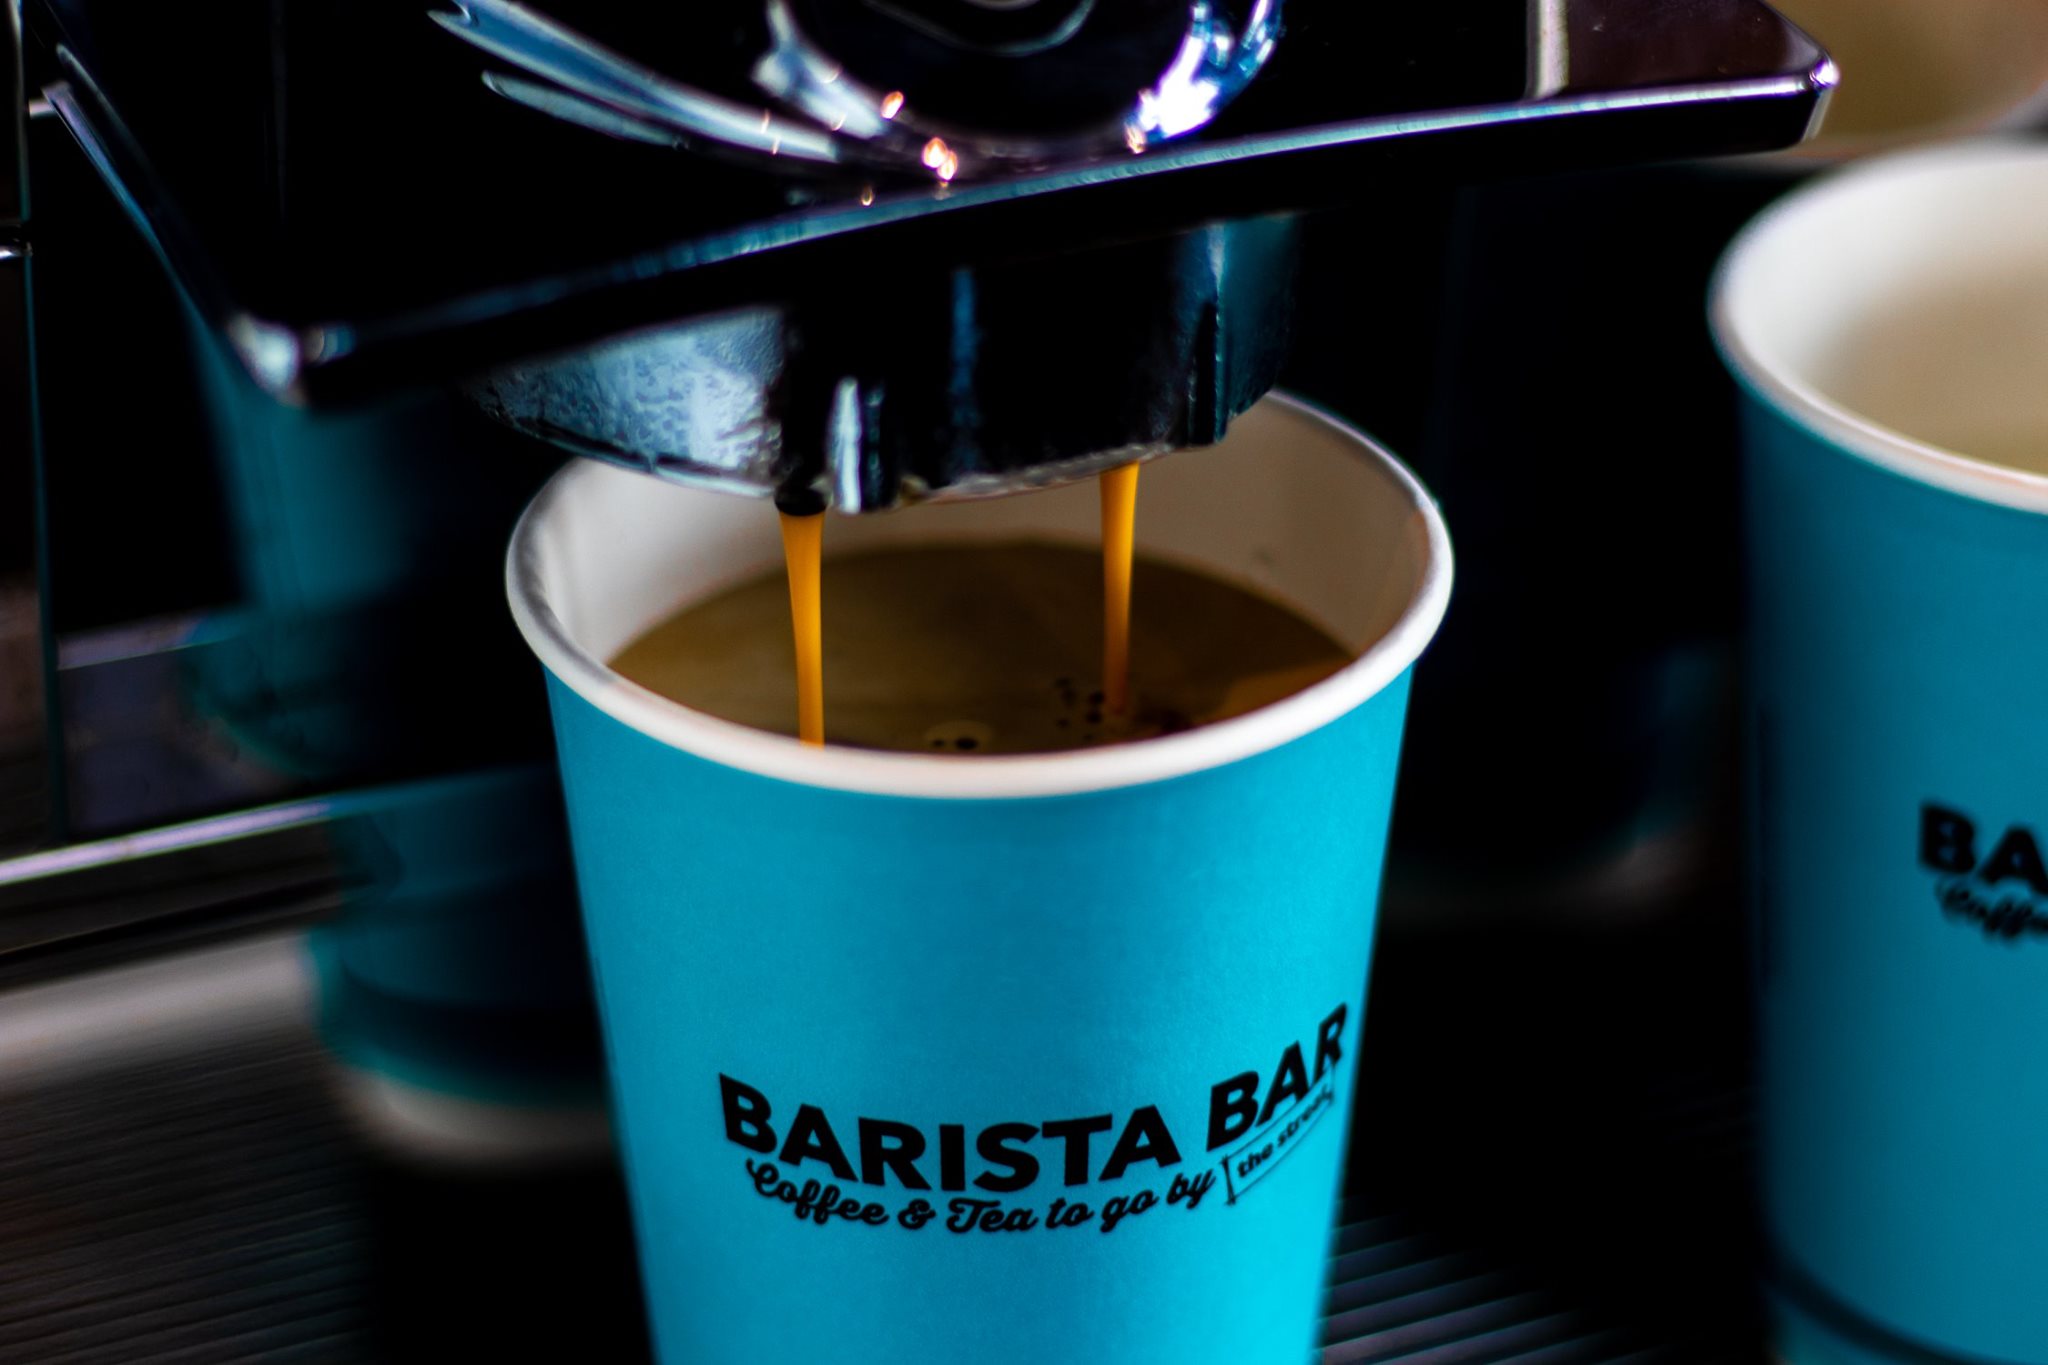 Barista Bar coffee machine